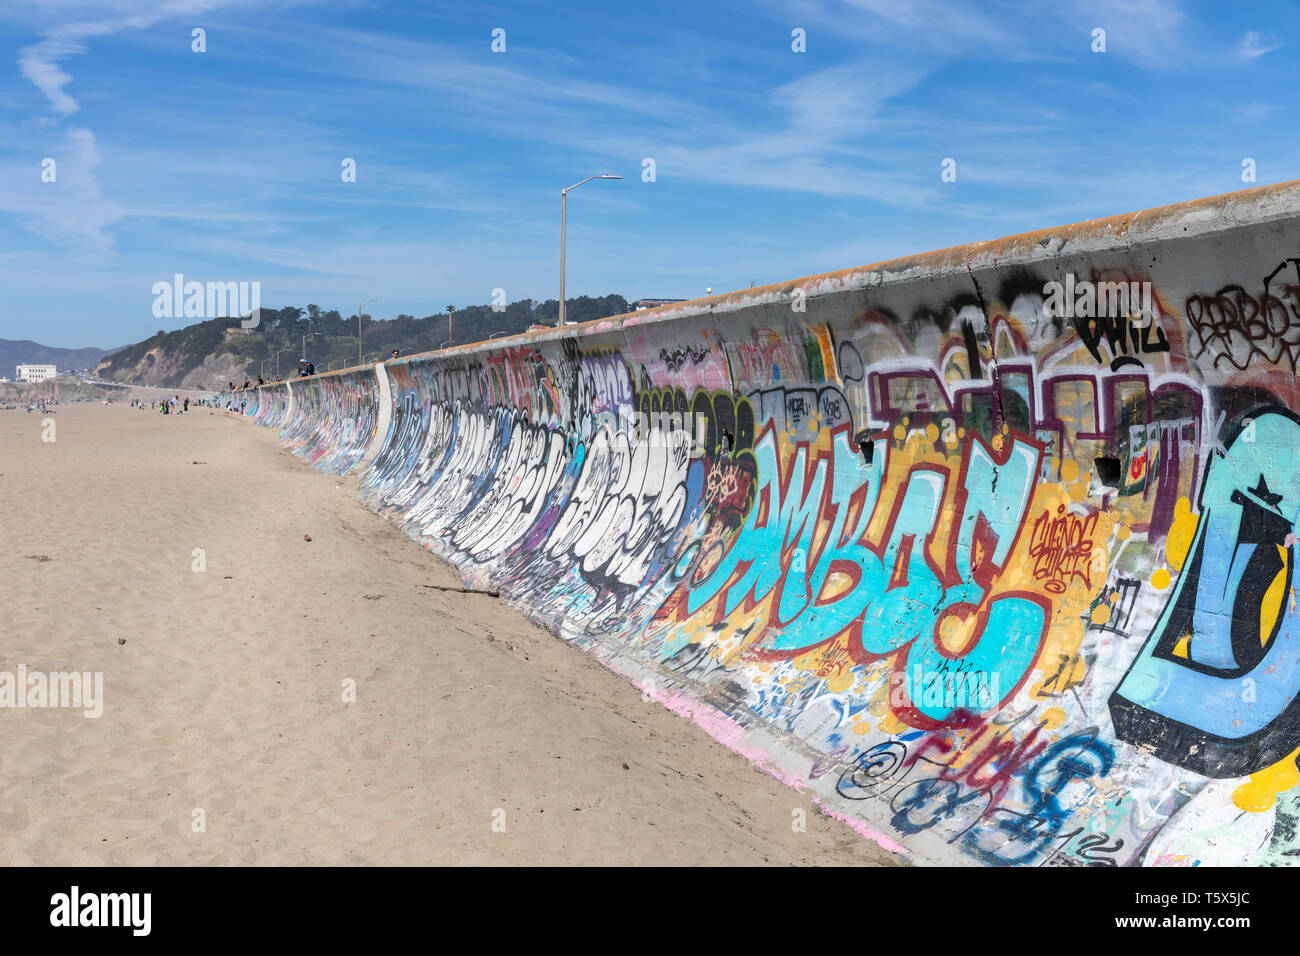 Graffiti on concrete wall along Ocean Beach, San Francisco, California Stock Photo